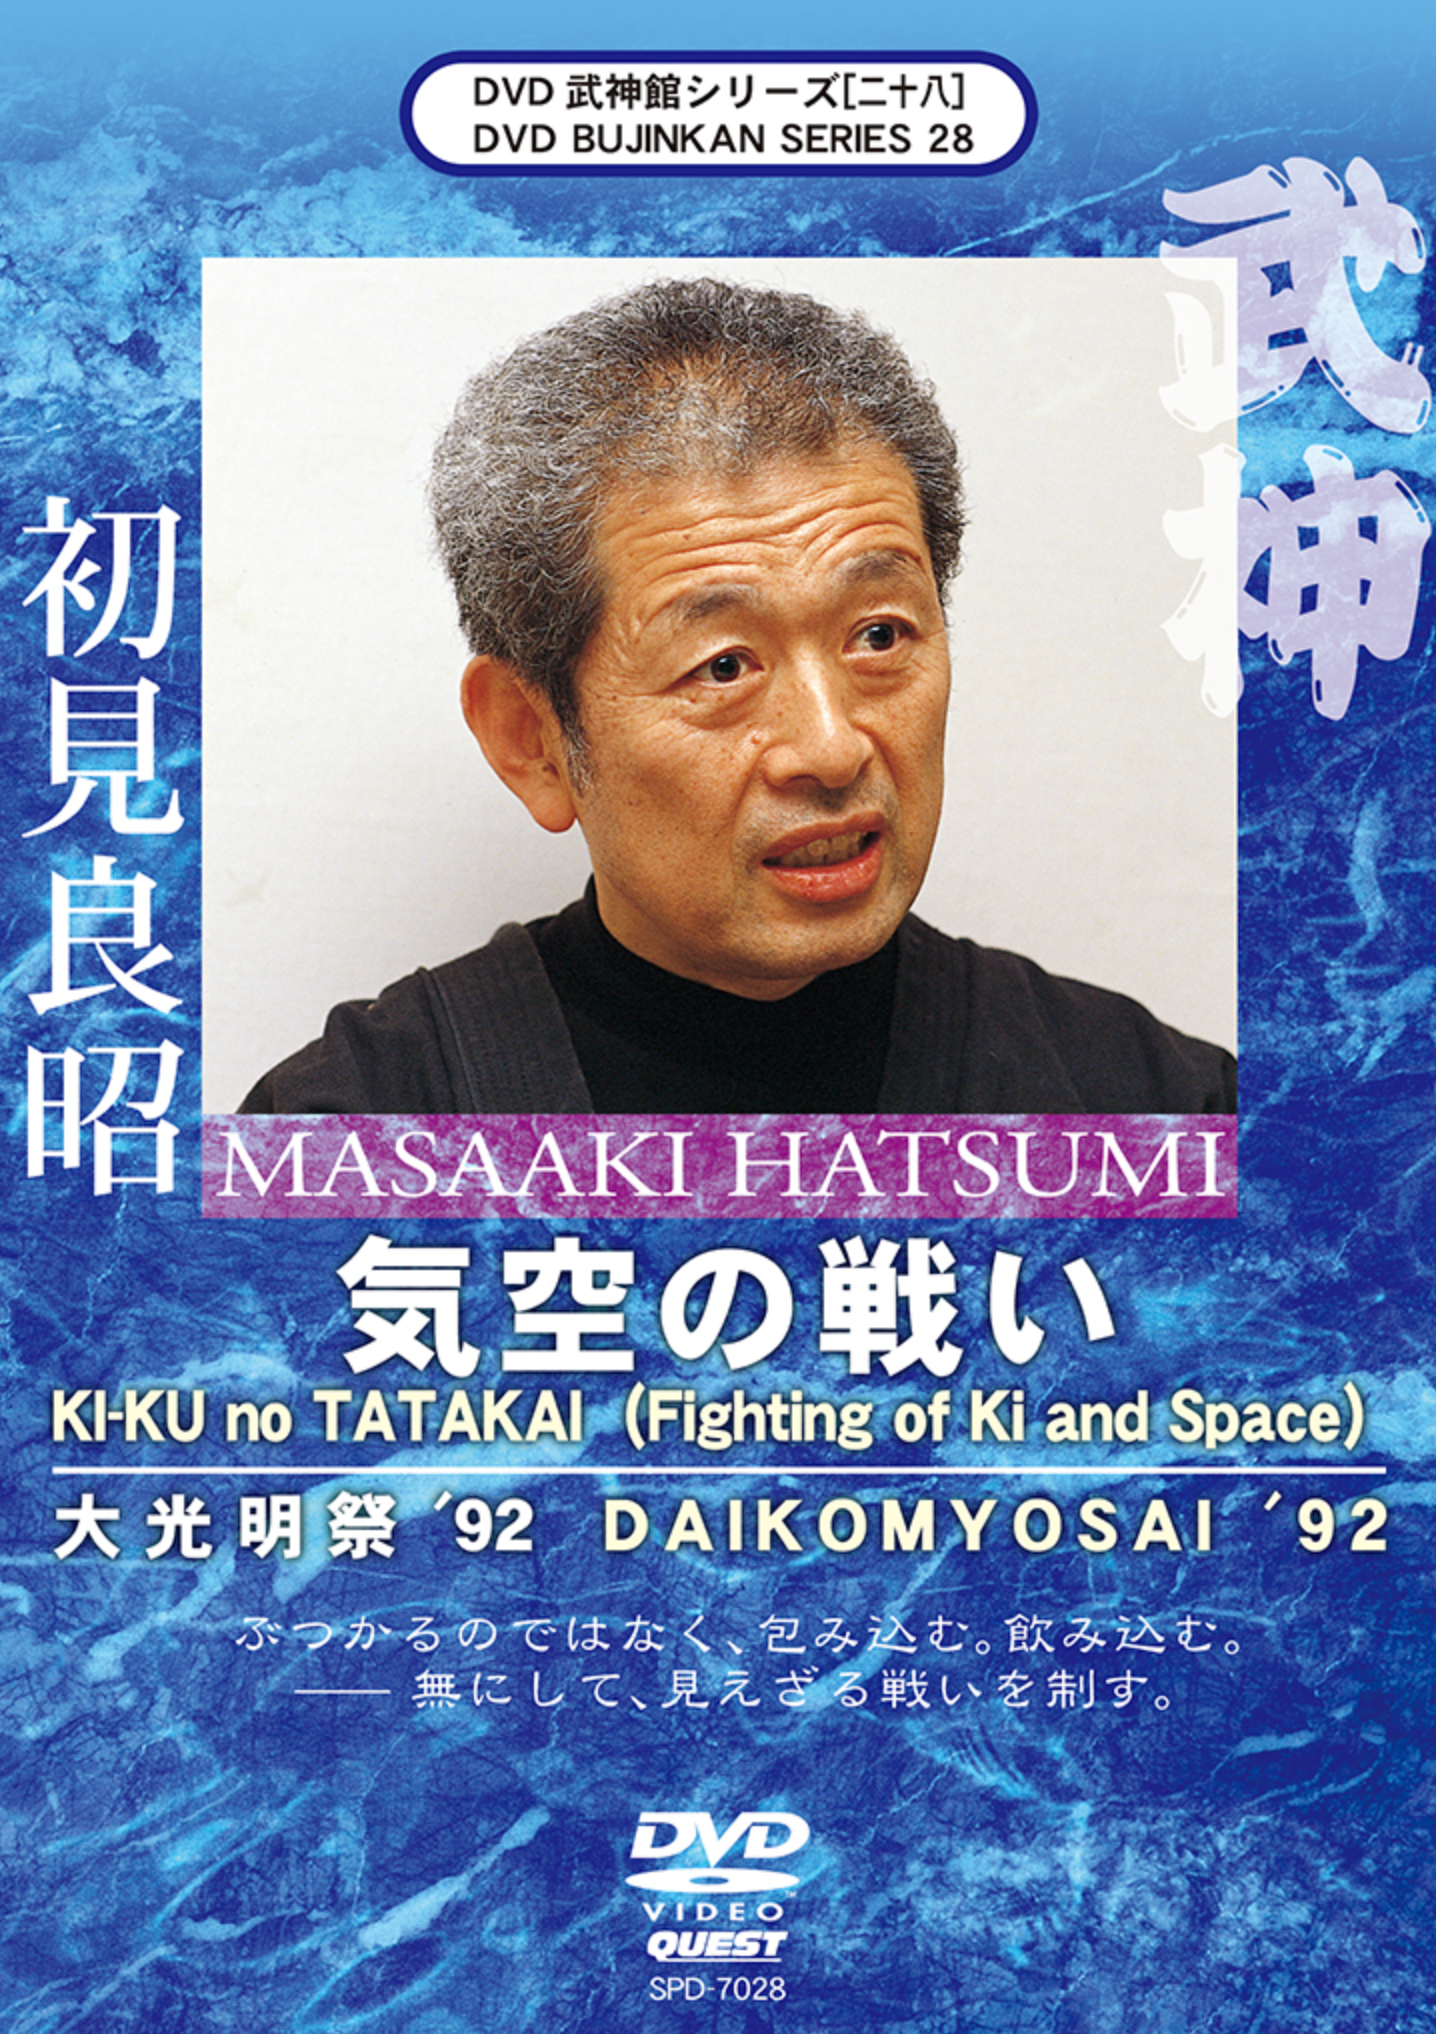 Bujinkan DVD Series 28: Fighting of Ki & Space with Masaaki Hatsumi - Budovideos Inc